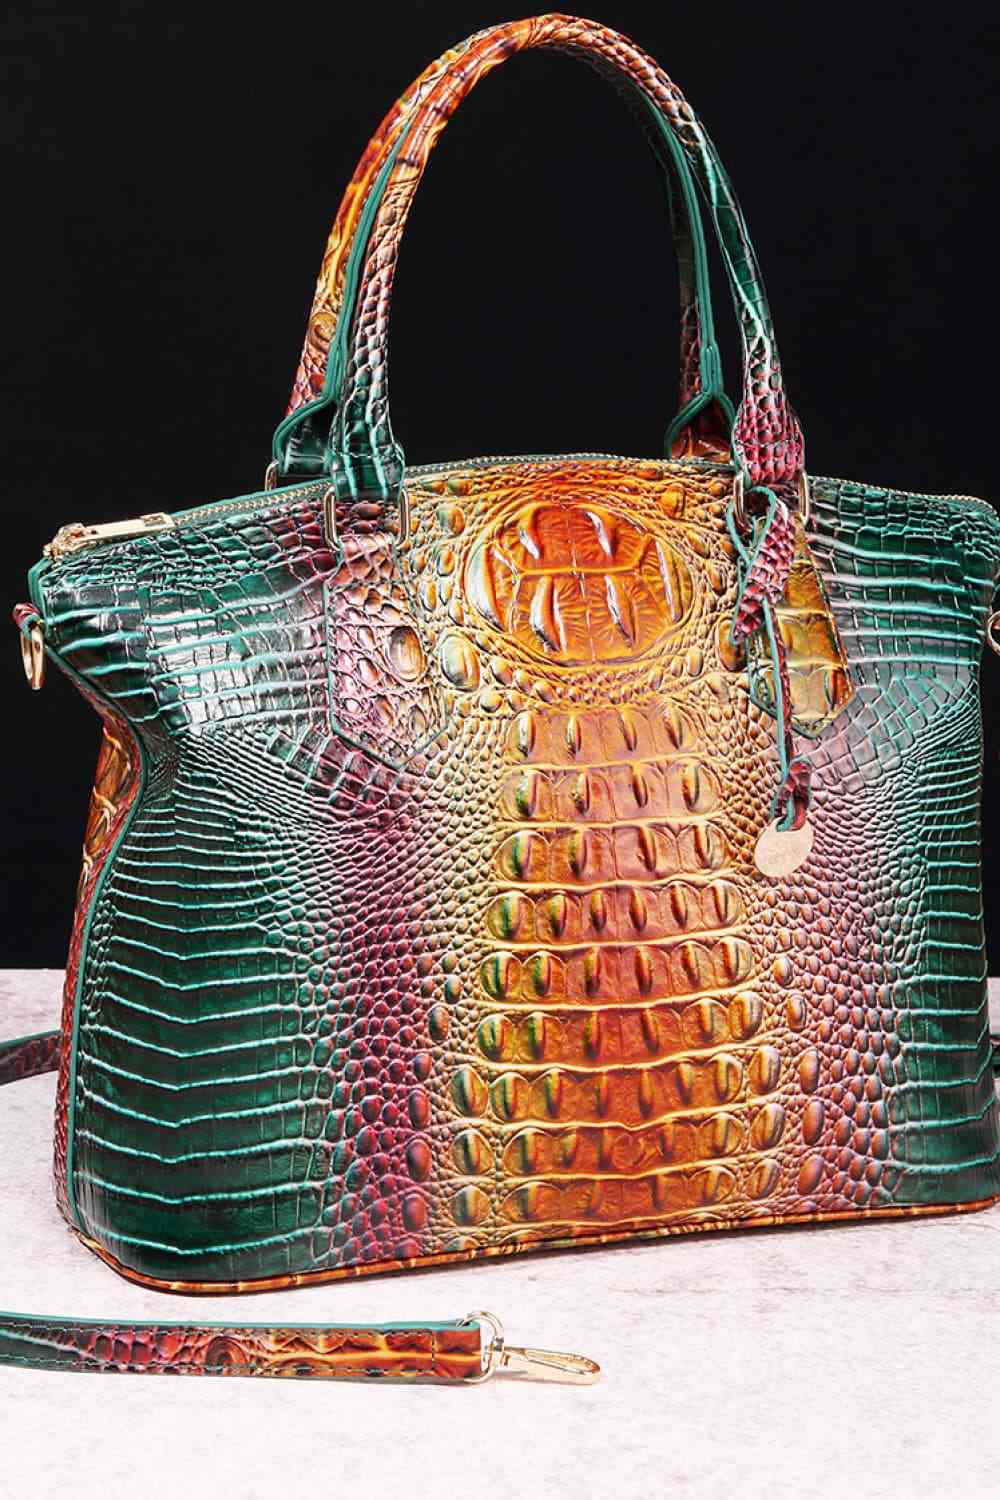 The Perfect Handbag - Beautiful Gift - Leather Handbag -Christmas, Birthday, Anniversary